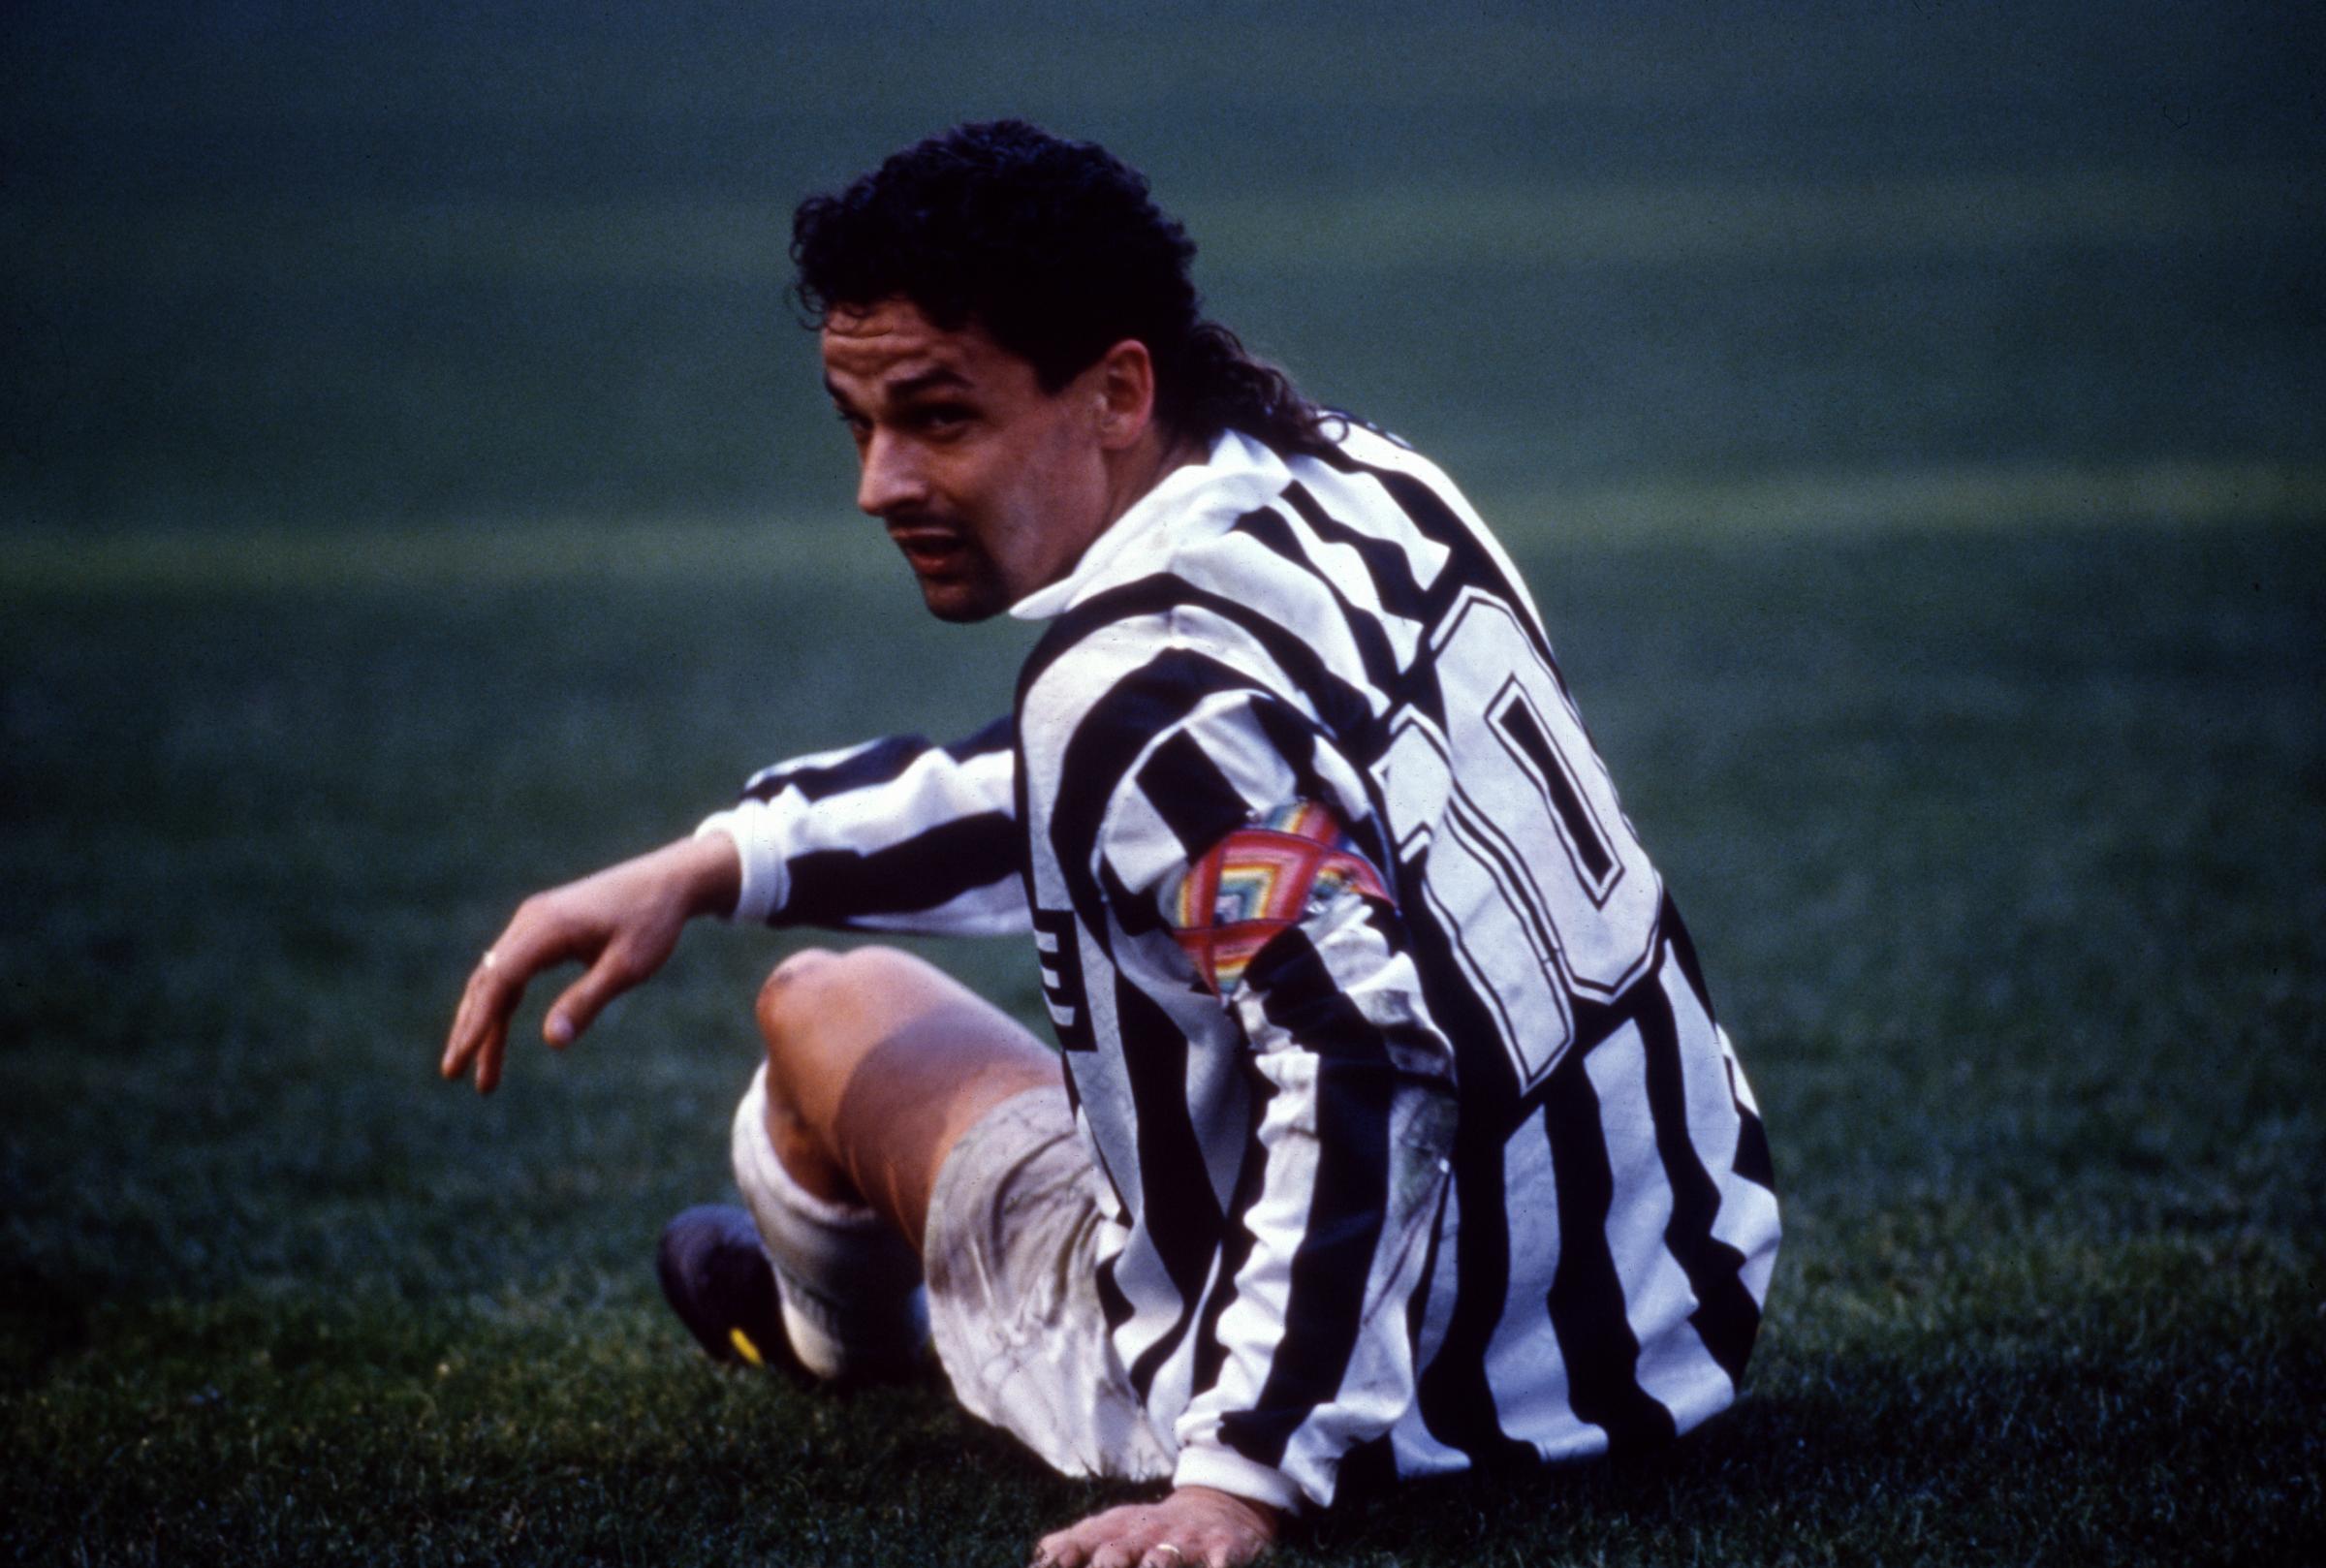 Roberto Baggio in action